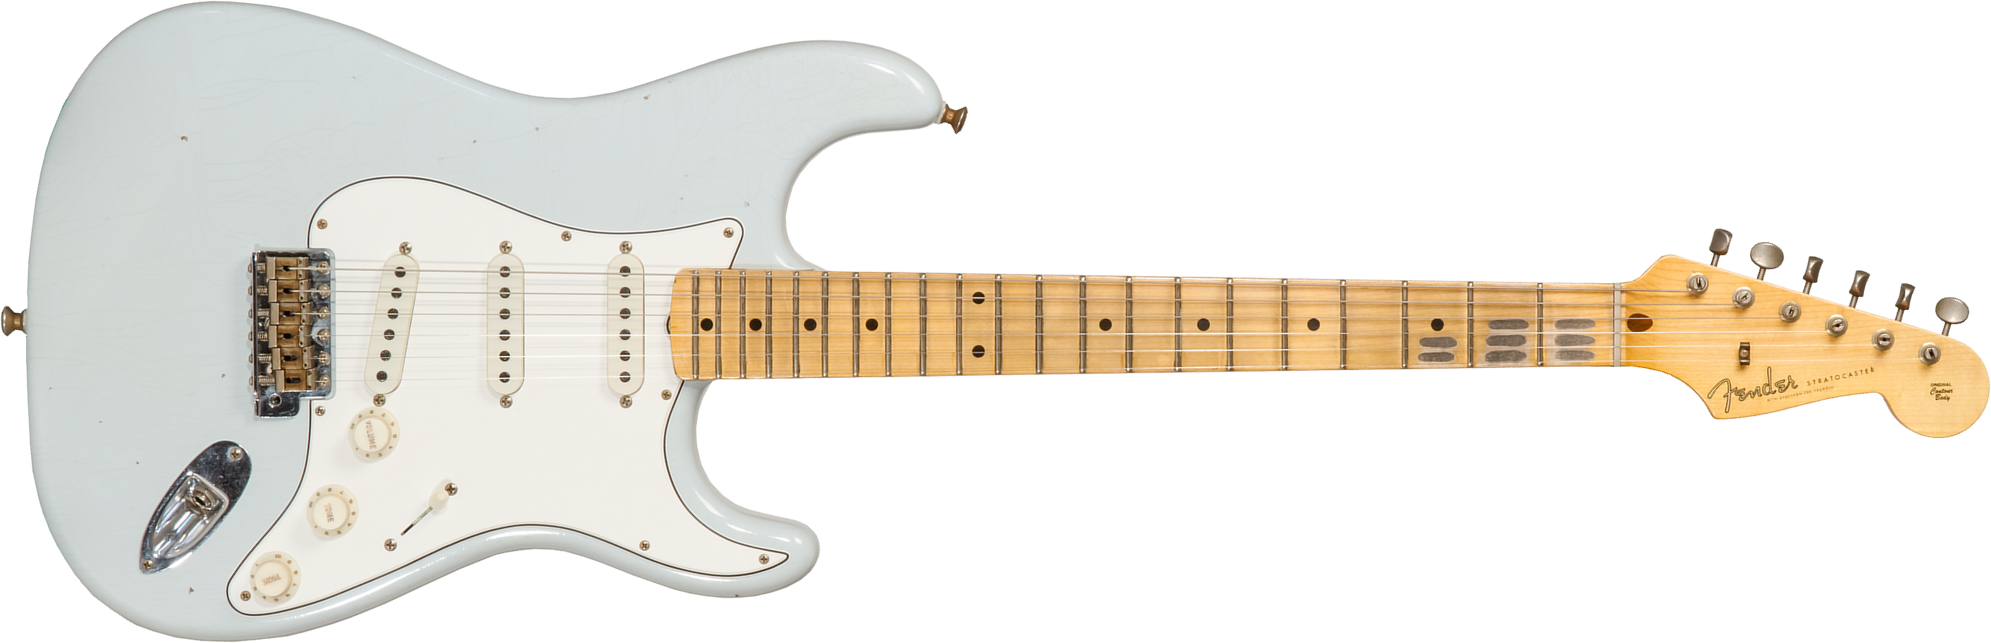 Fender Custom Shop Strat Tomatillo Special 3s Trem Mn #cz571194 - Journeyman Relic Aged Sonic Blue - Elektrische gitaar in Str-vorm - Main picture